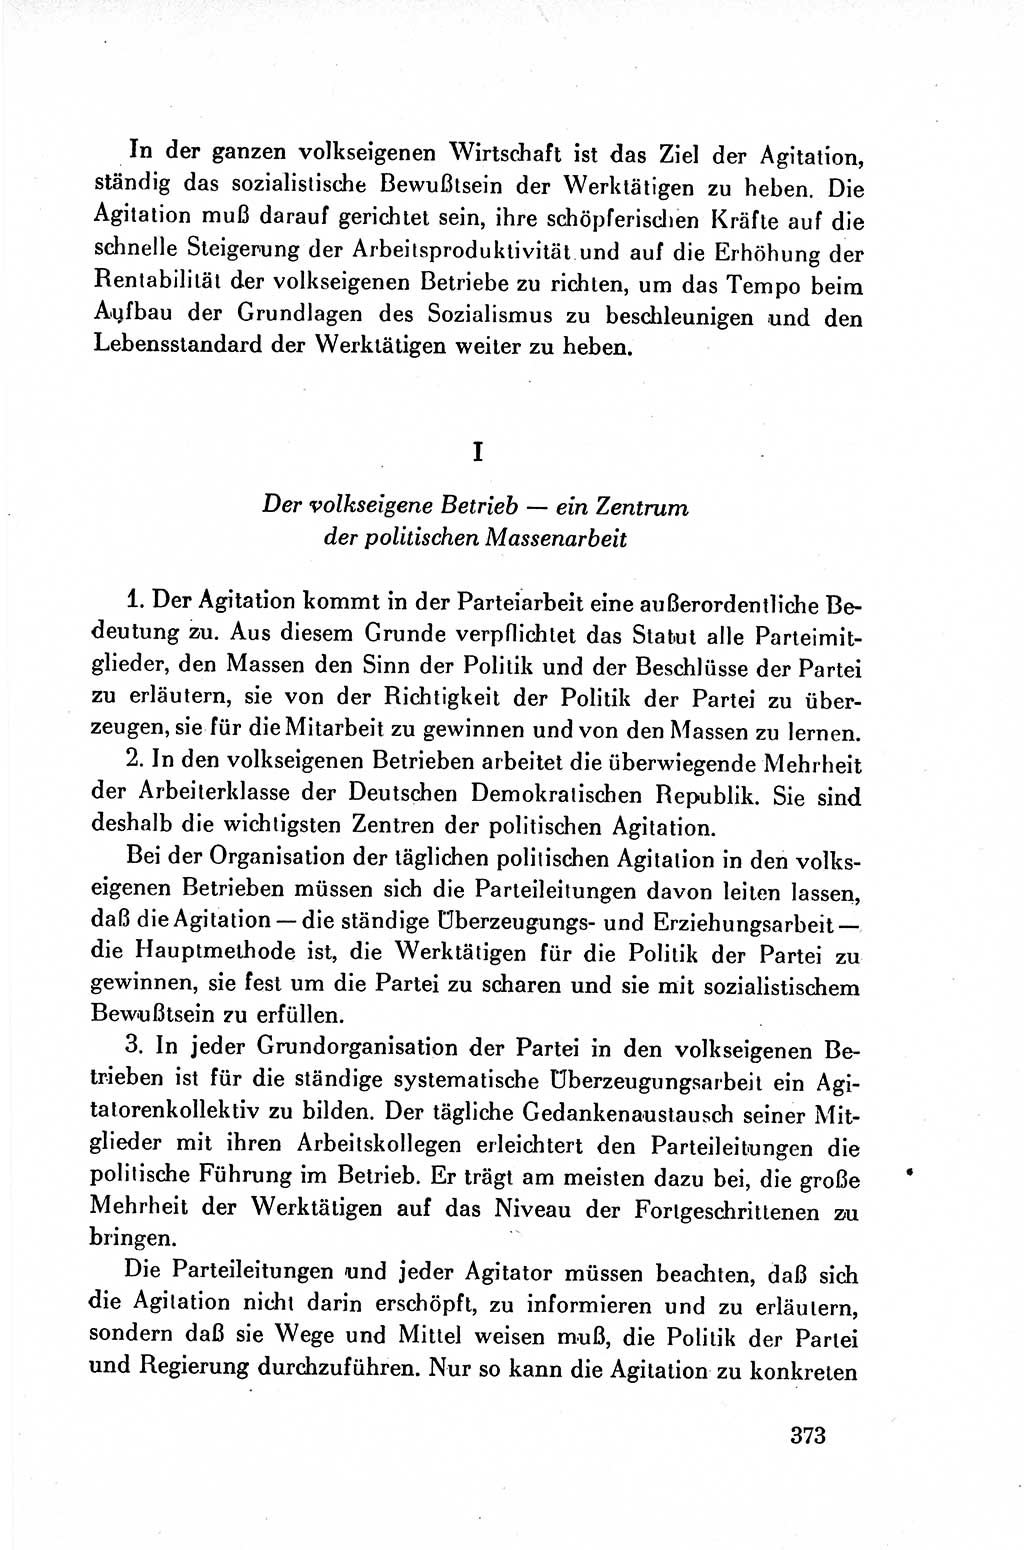 Dokumente der Sozialistischen Einheitspartei Deutschlands (SED) [Deutsche Demokratische Republik (DDR)] 1954-1955, Seite 373 (Dok. SED DDR 1954-1955, S. 373)